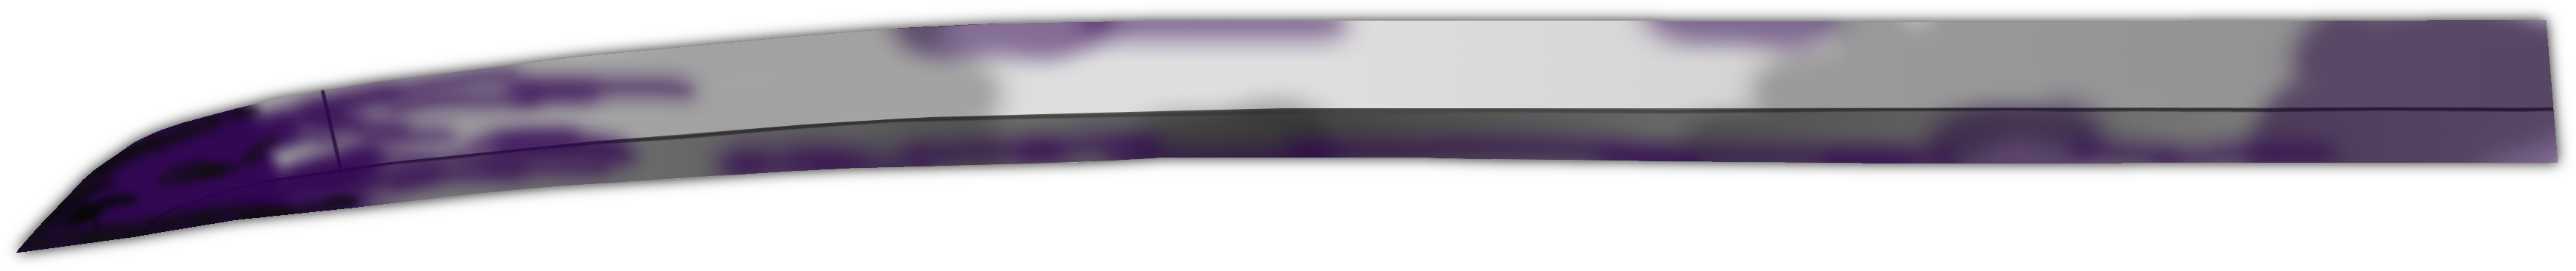 Purple Blade Katana Silhouette PNG image